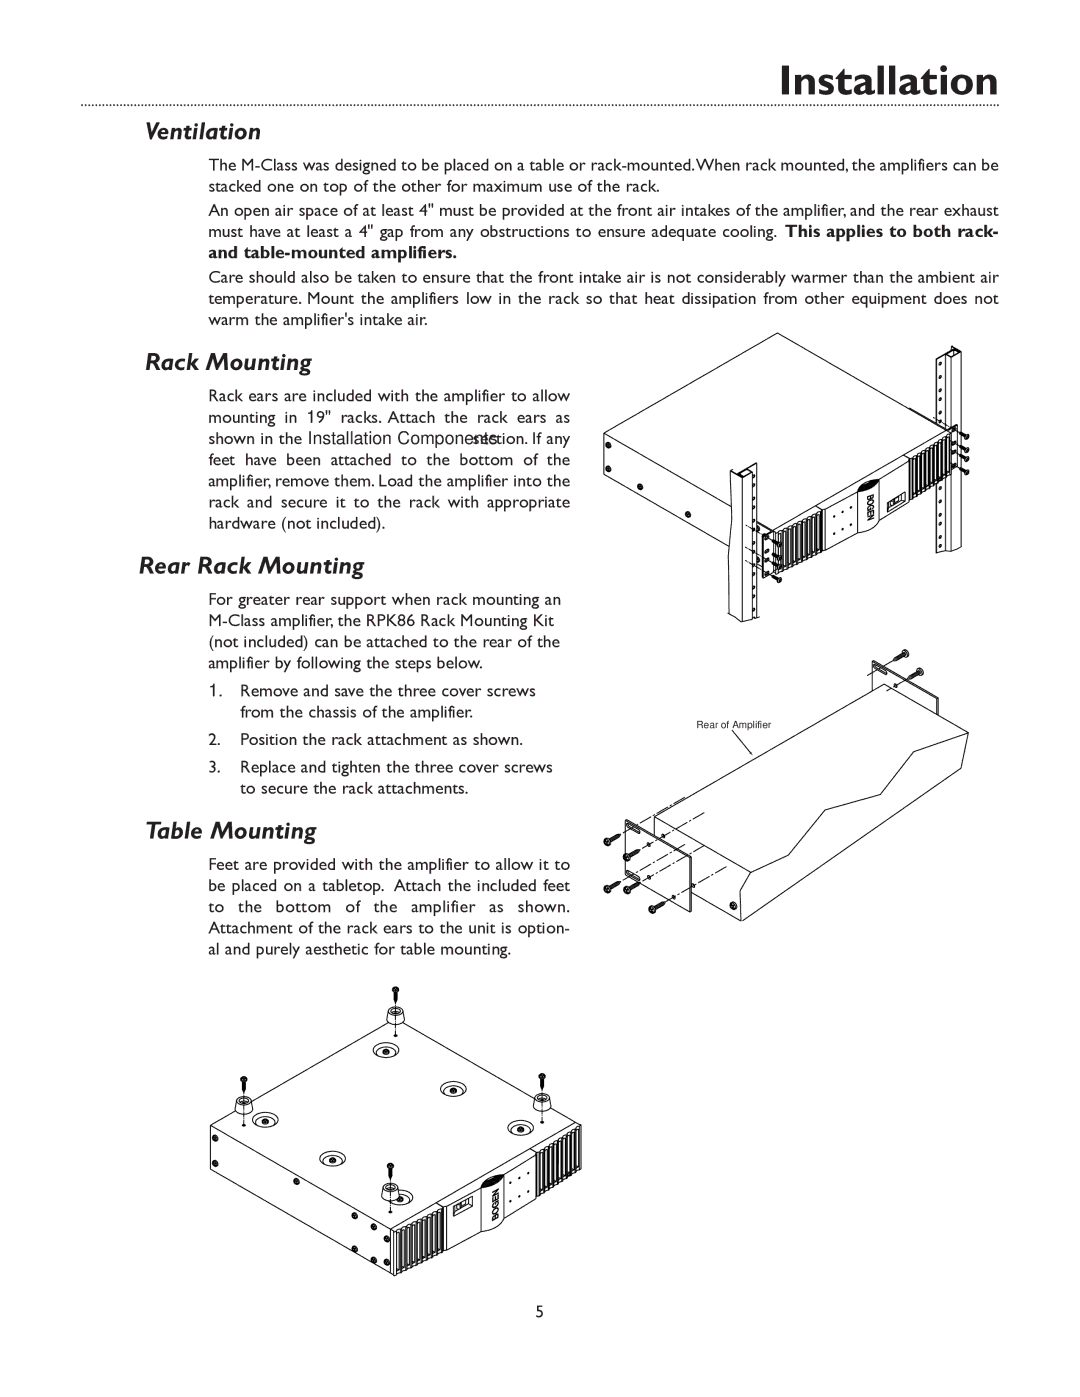 Bogen M600, M450, BOGEN M300 manual Ventilation, Rear Rack Mounting, Table Mounting 